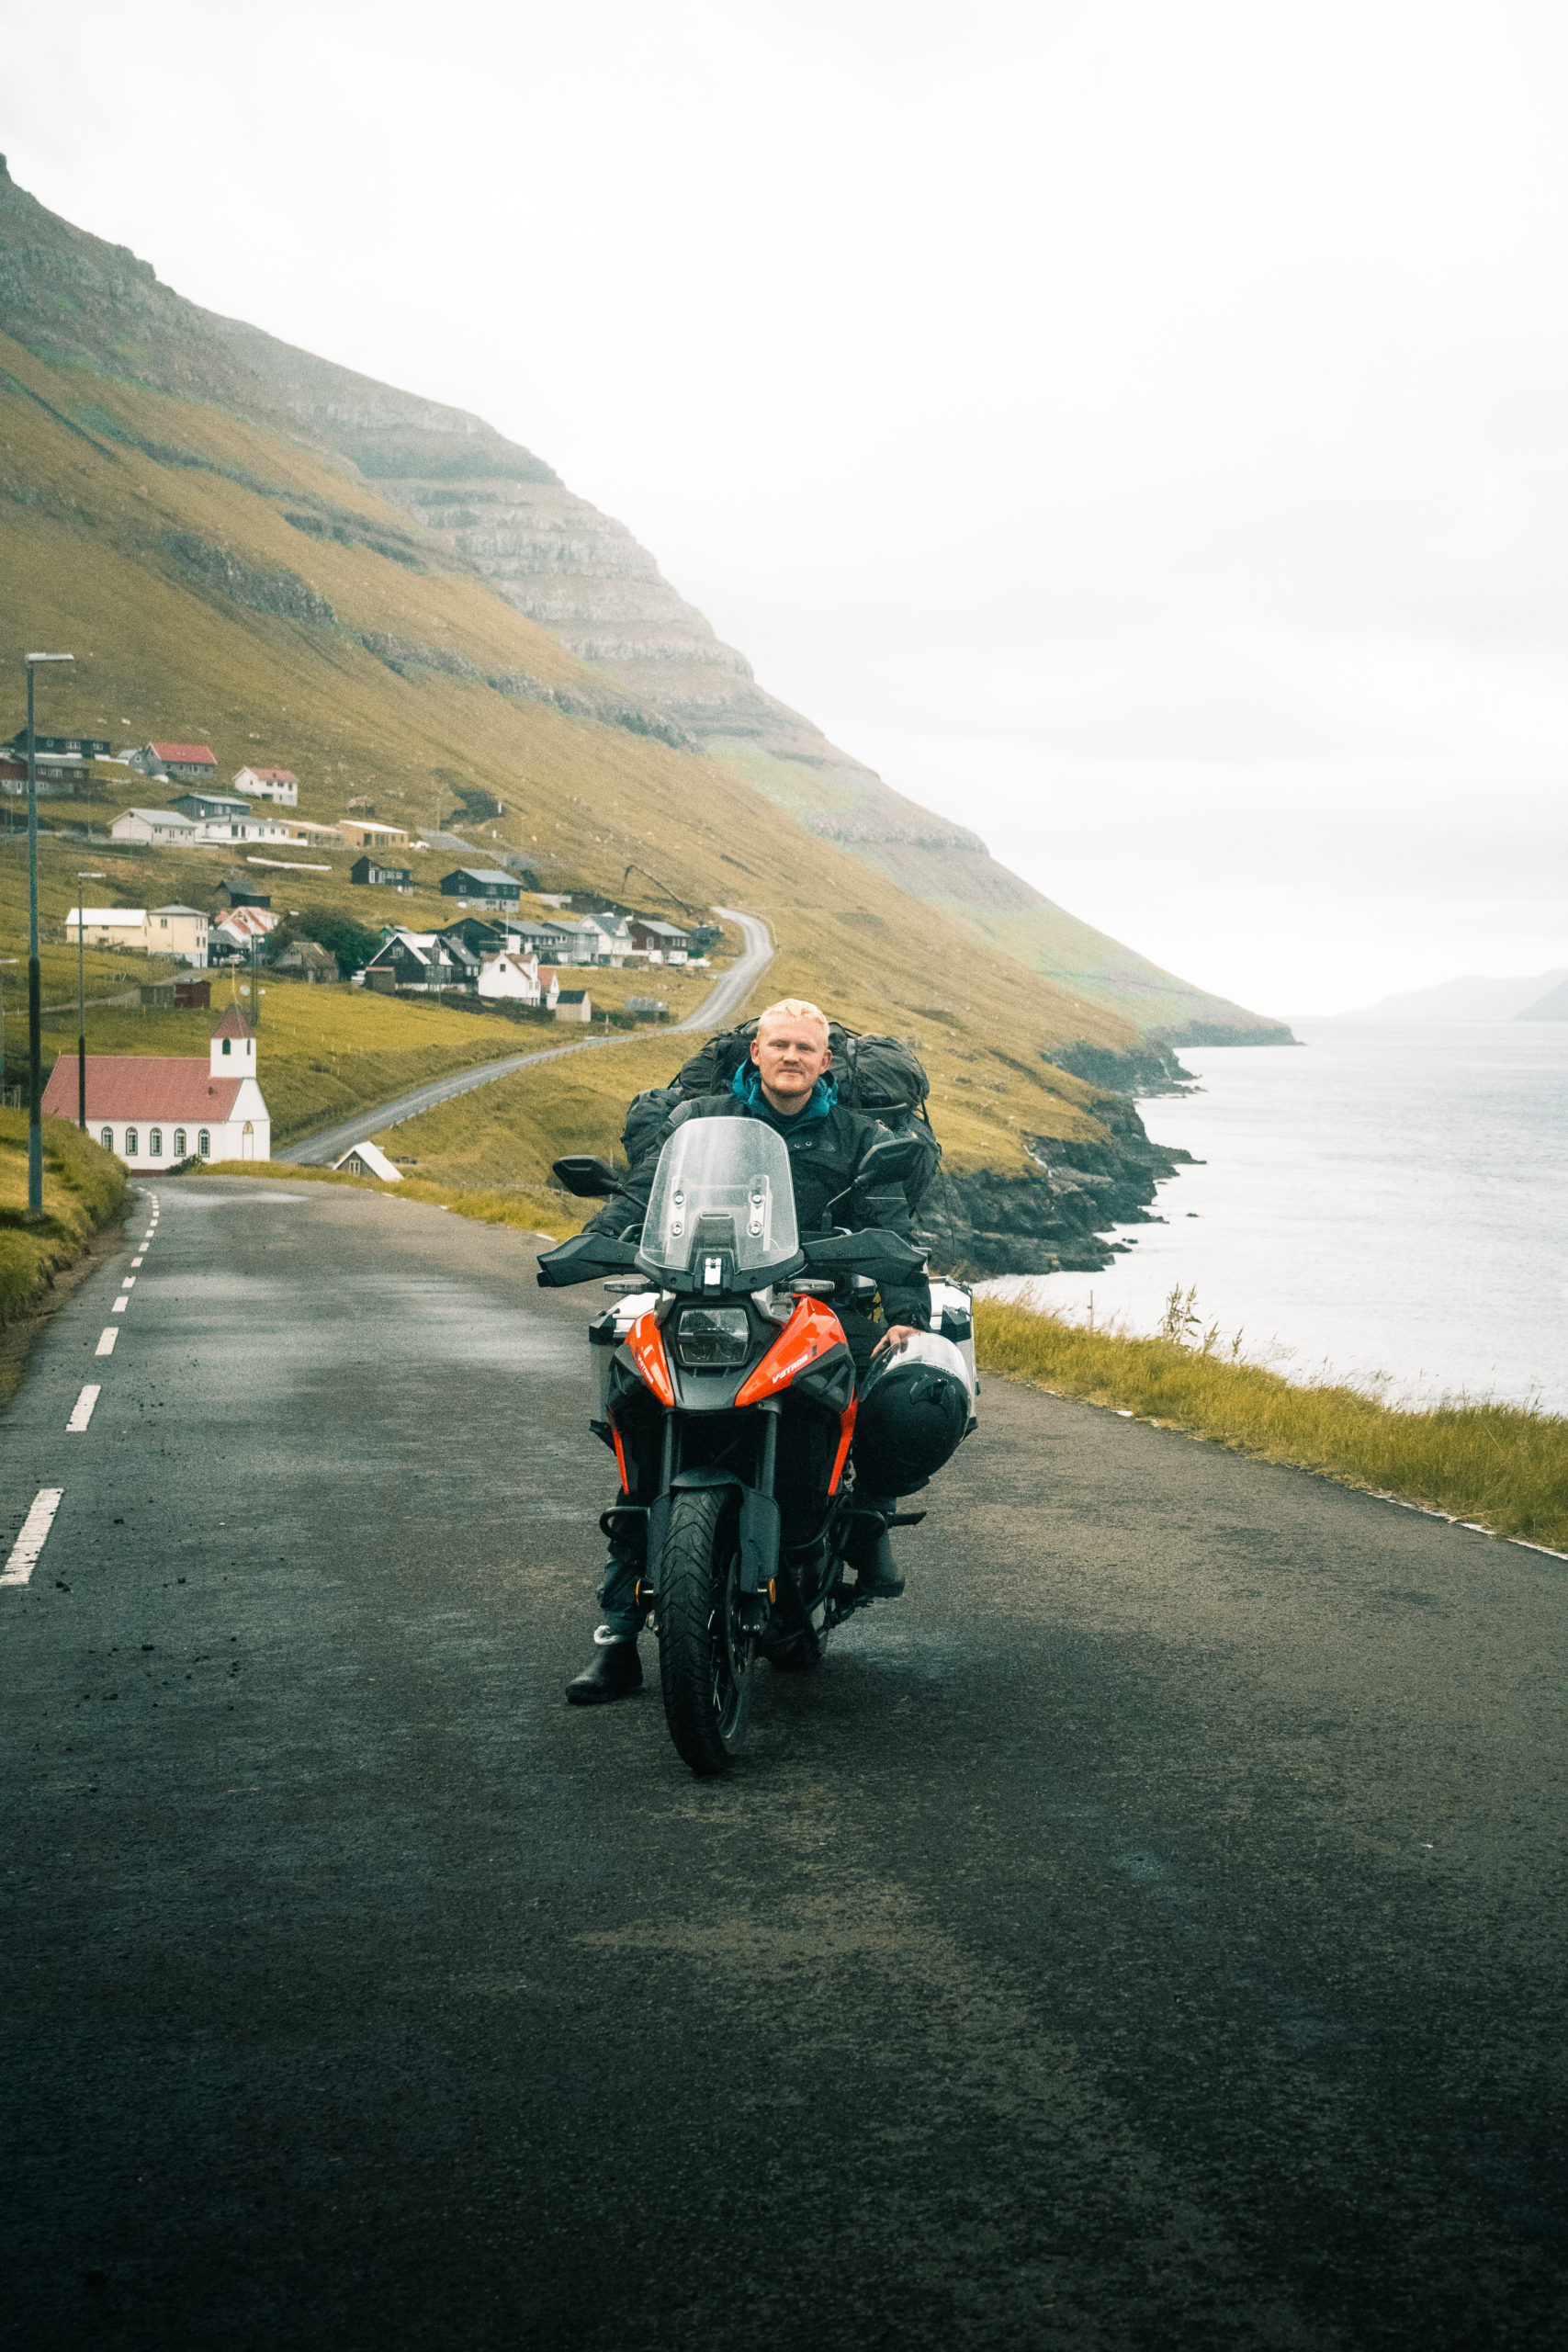 Tale mikrobølgeovn slutpunkt Færøerne - 11 dage på 2 hjul. | Velkommen til mine rejser